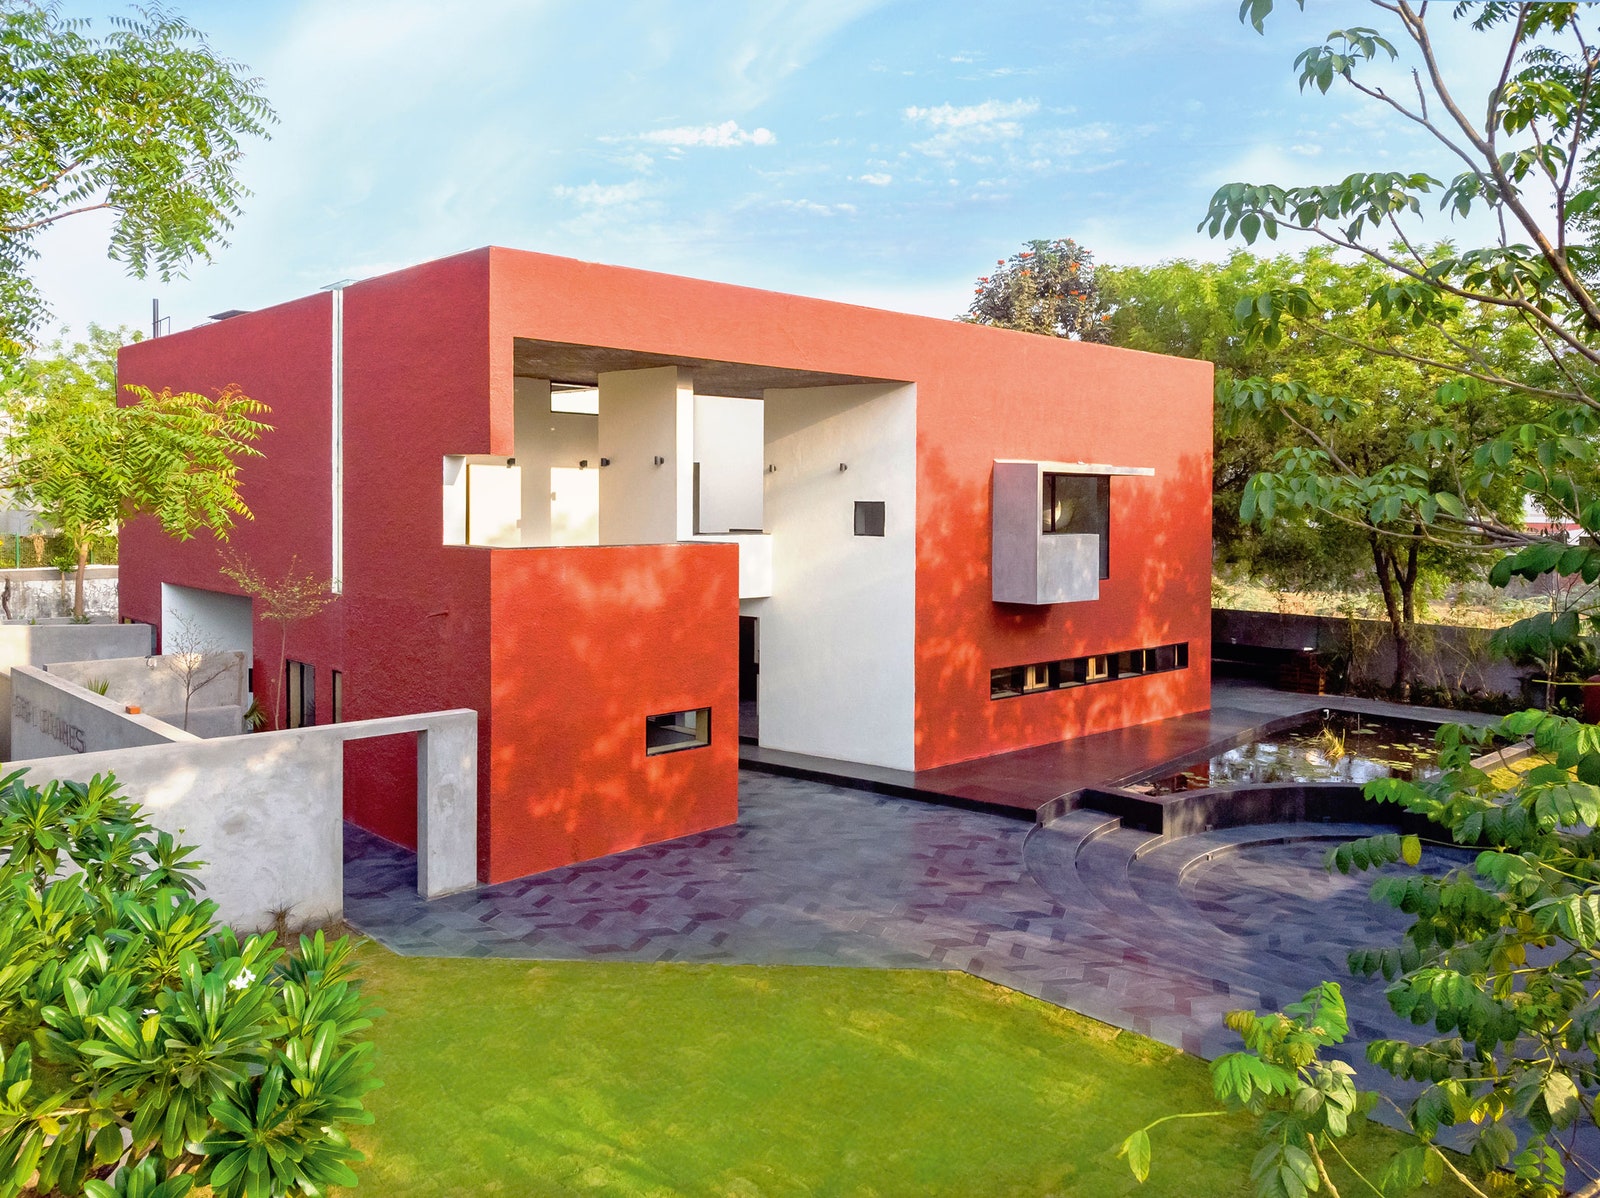 Центр искусств по проекту Vāstu Shilpā Consultants архитекторы Кушу Пантаки Хоф и Зёнке Хоф Ахмадабад Индия.